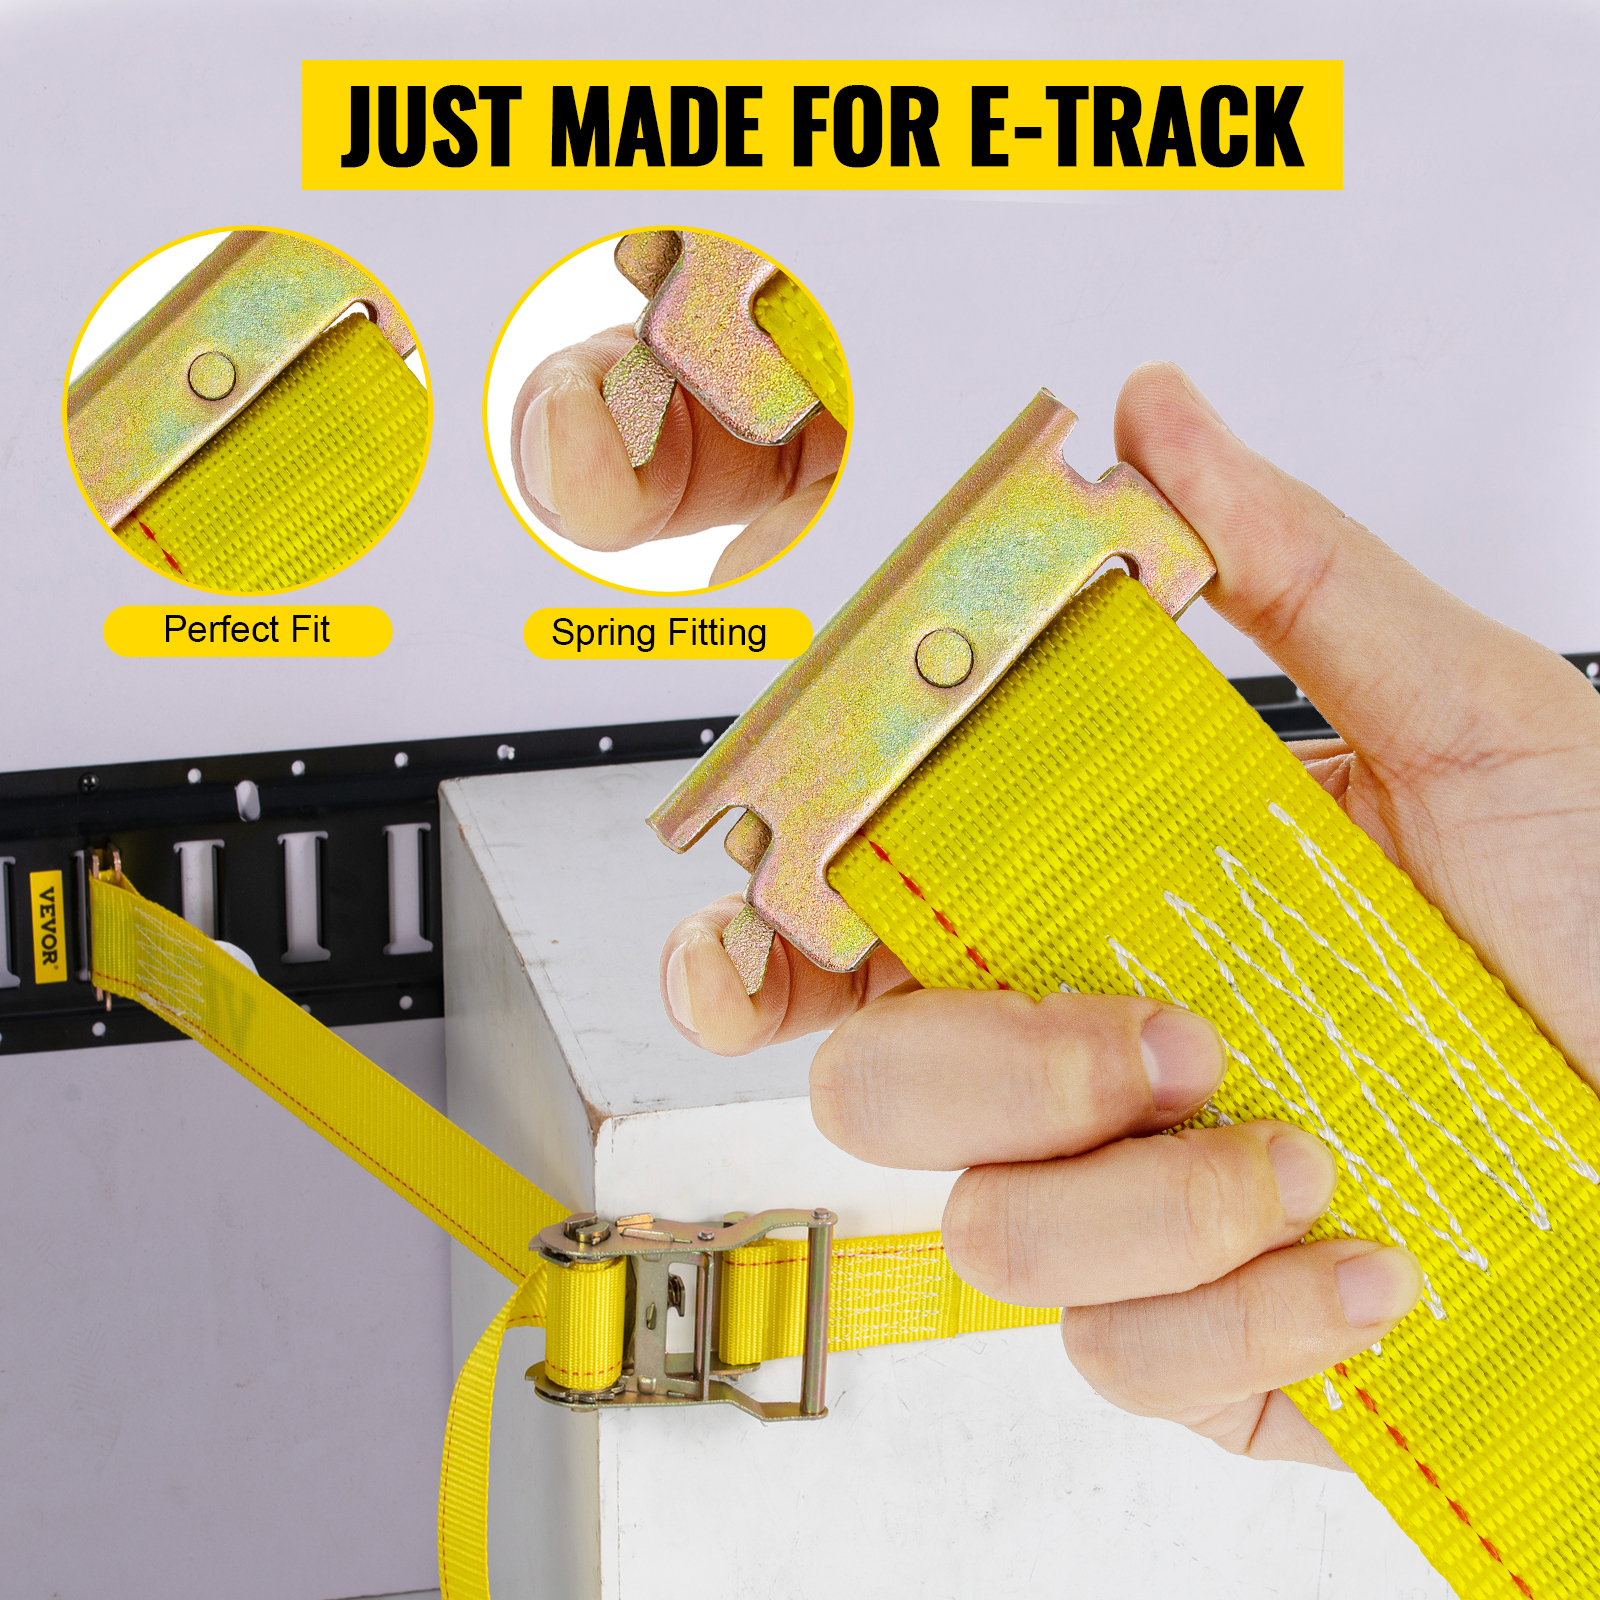 VEVOR E-Track Ratchet Strap, 18 Pack 2 x 15' E Track Straps 4400